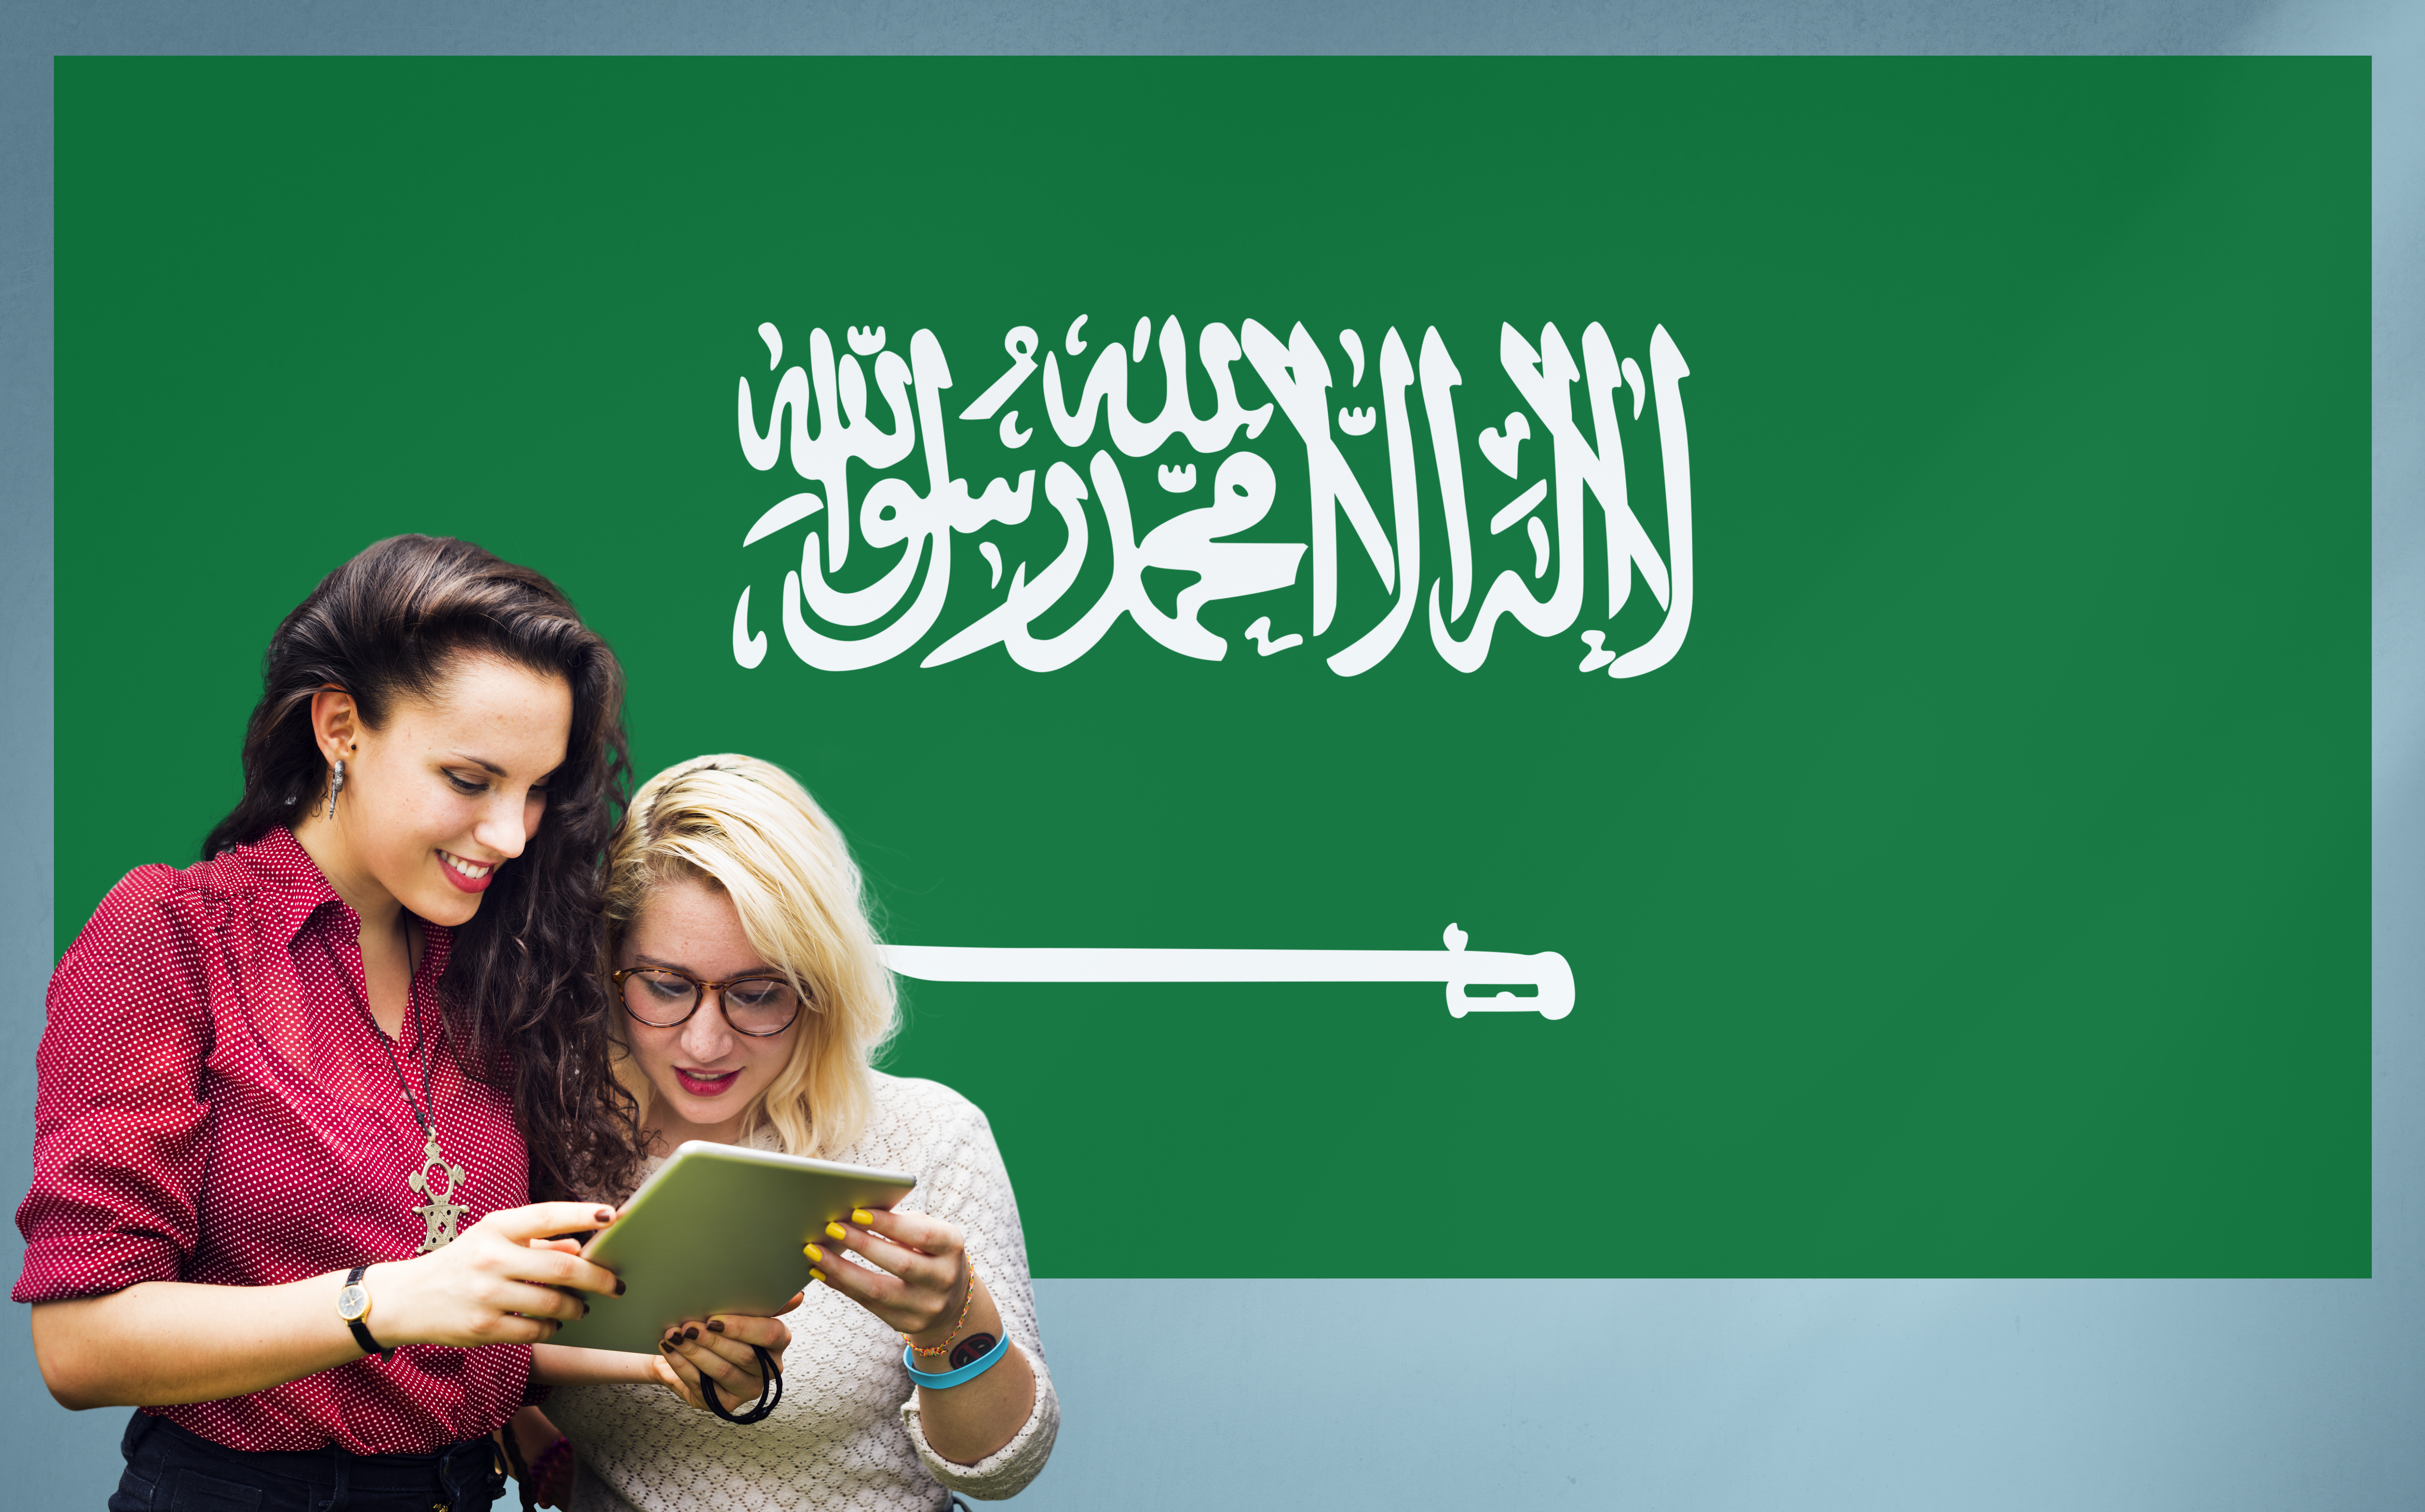 Студентки на фоне флага Саудовской Аравии, куда могут уехать на учебу иностранцы